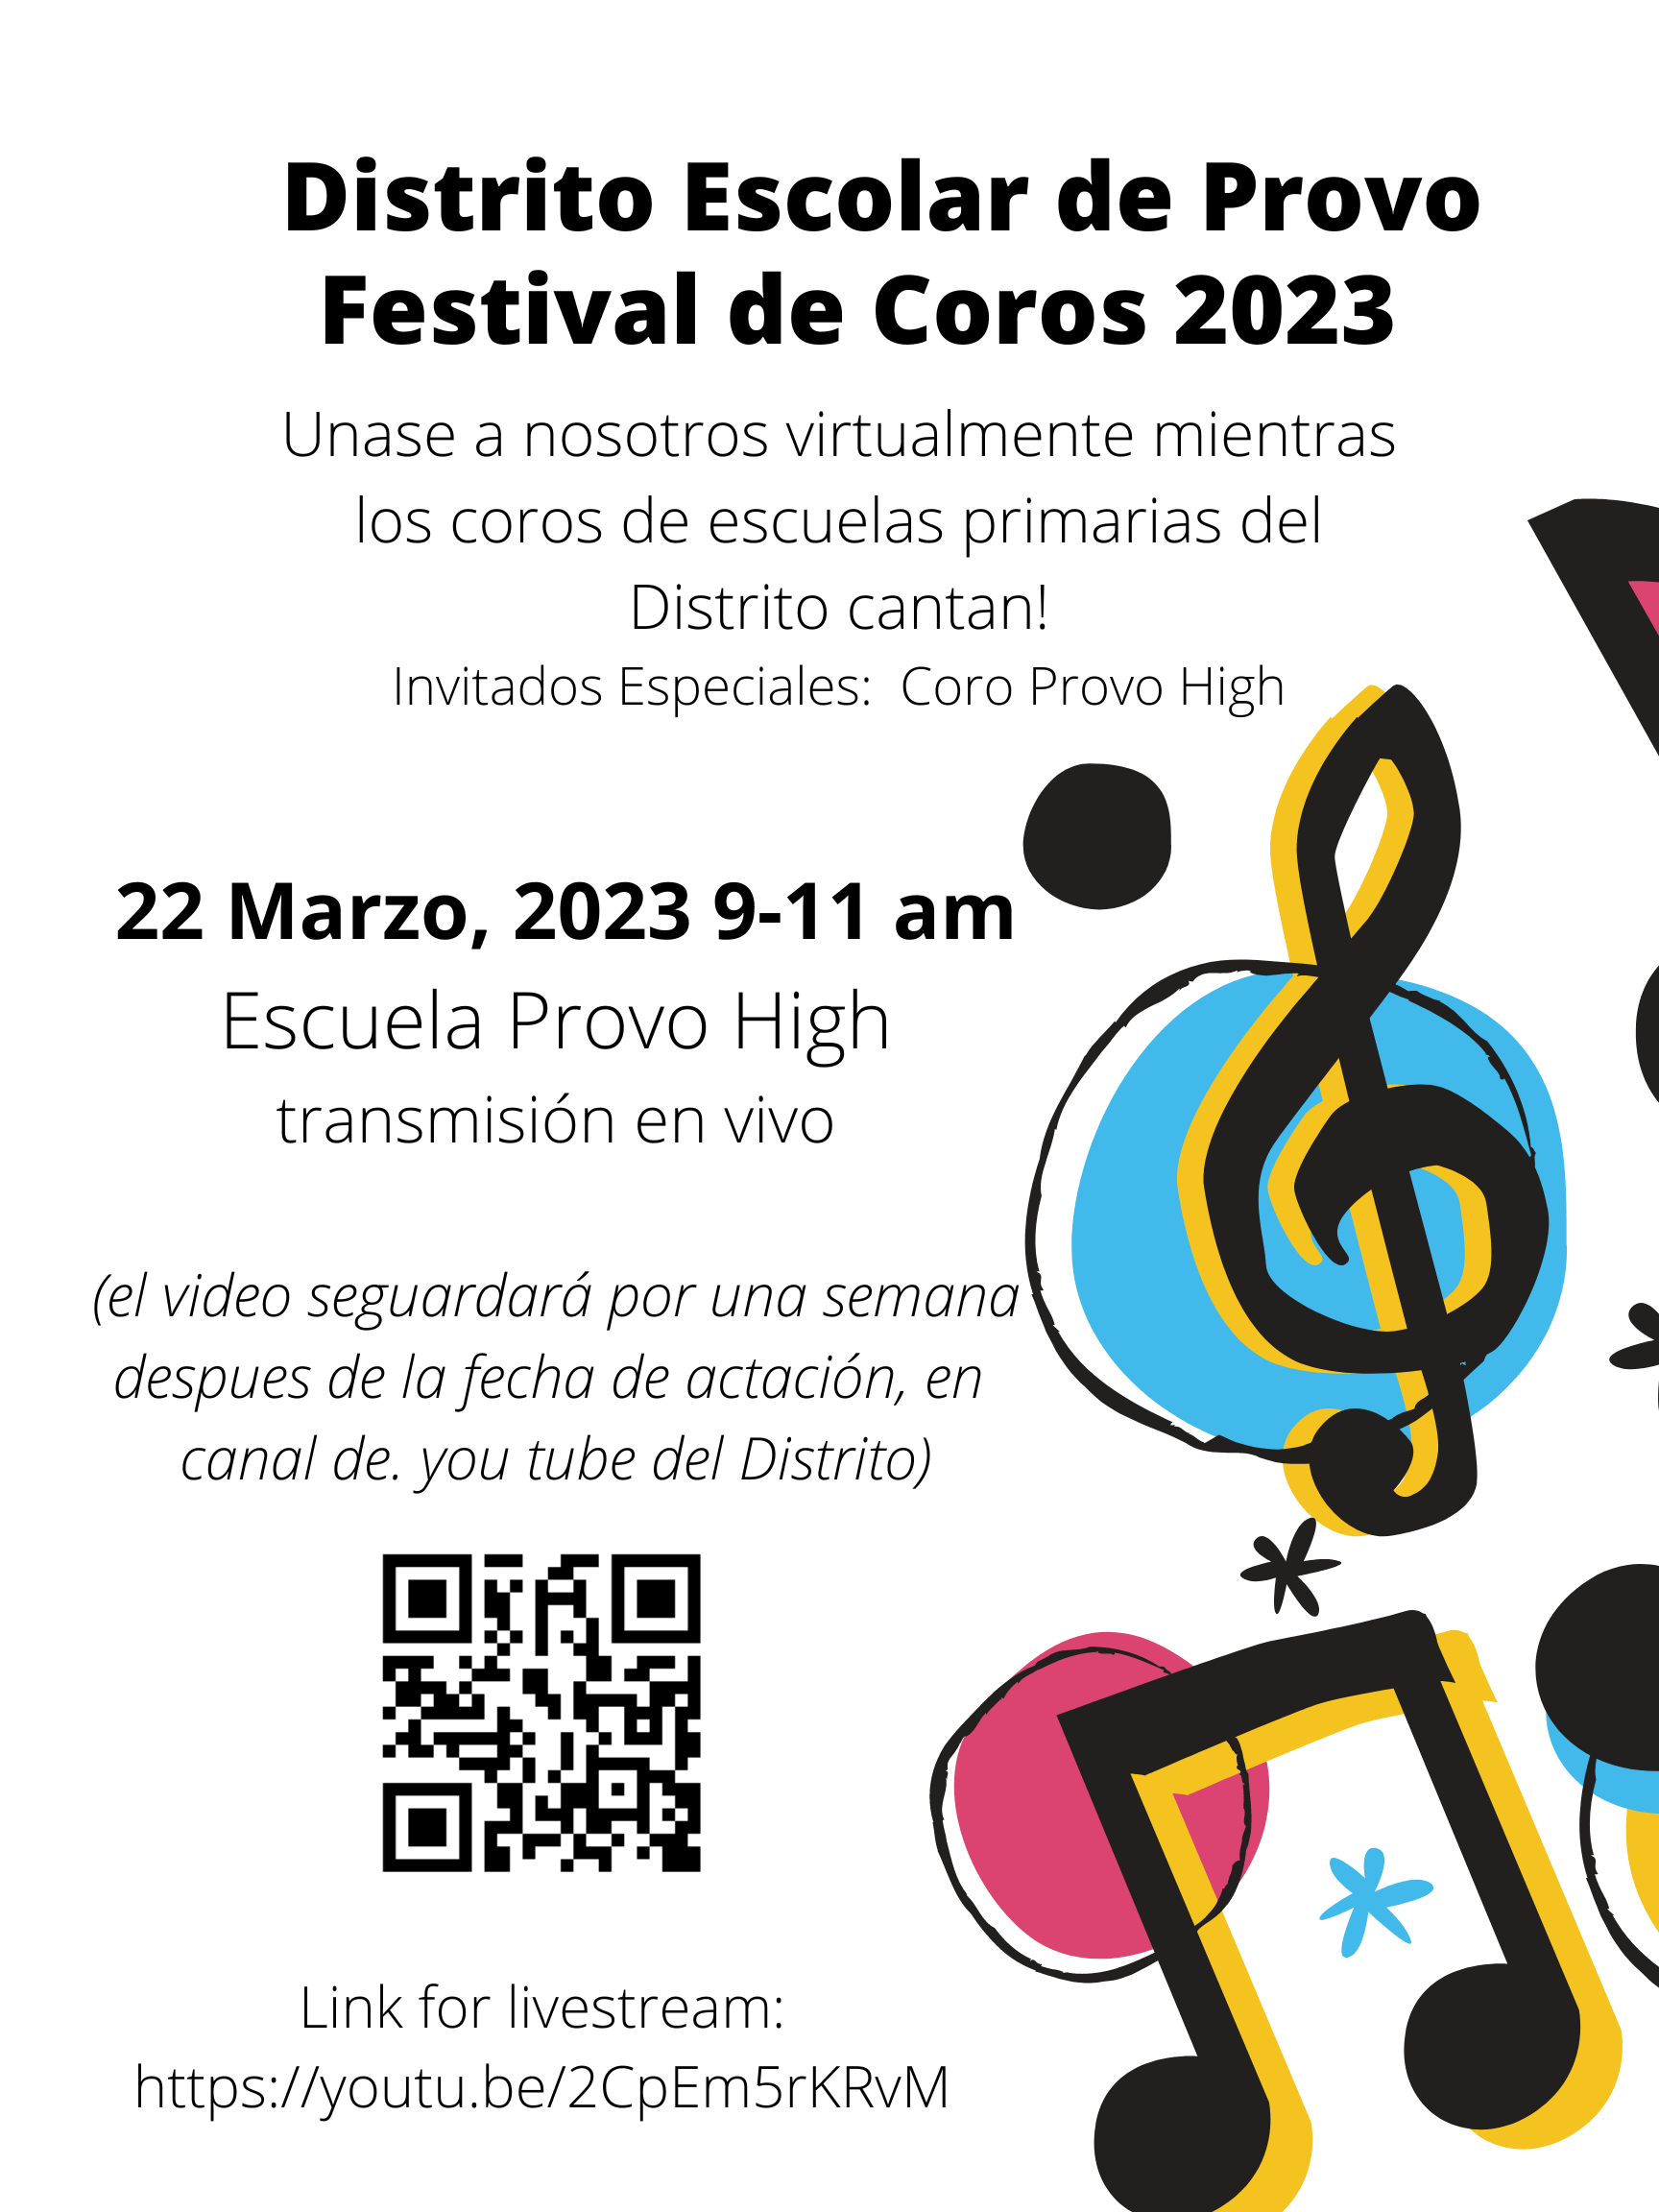 Spanish flier for choir festival